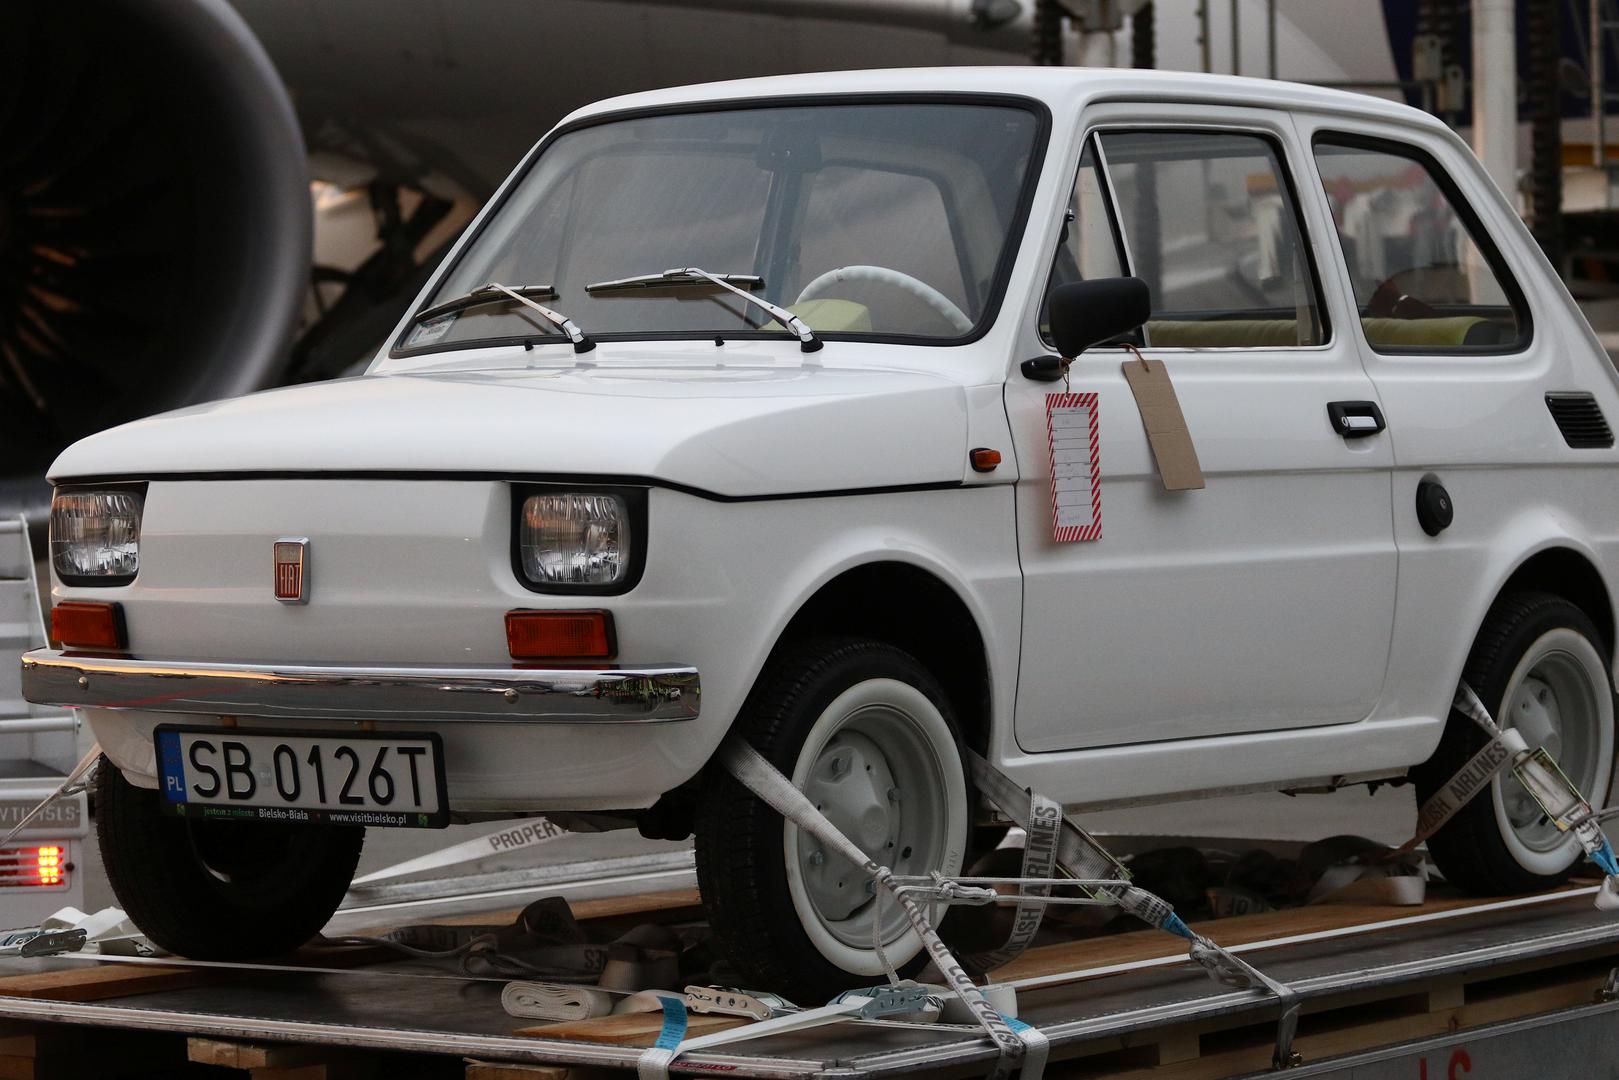 Naime, Tomu Hanksu kao suvenir šalju Fiat 126p, popularnu peglicu koja se uglavnom proizvodila u tvornici u Poljskoj.